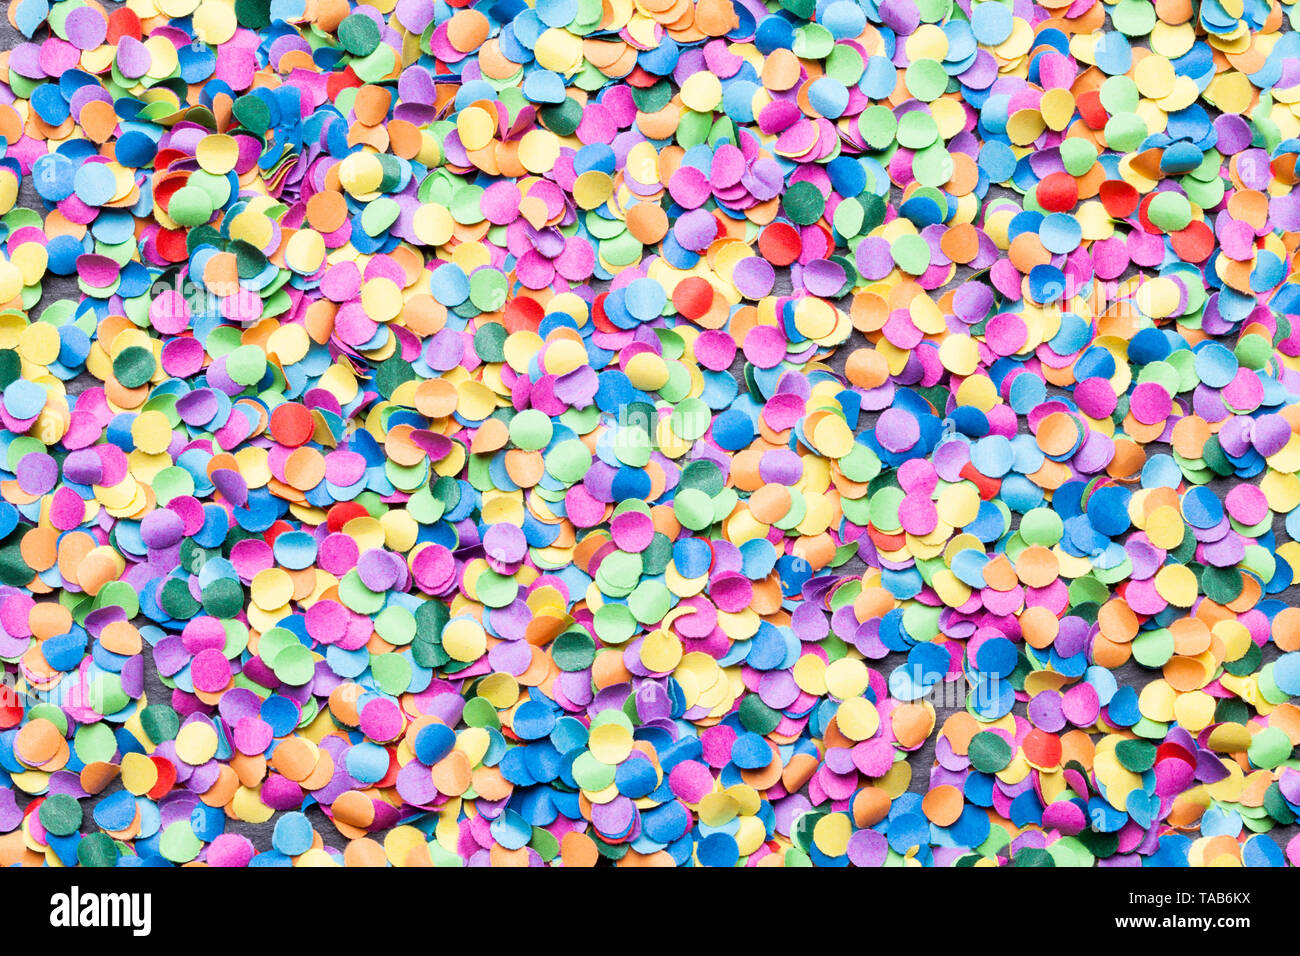 confetti background colorful Stock Photo